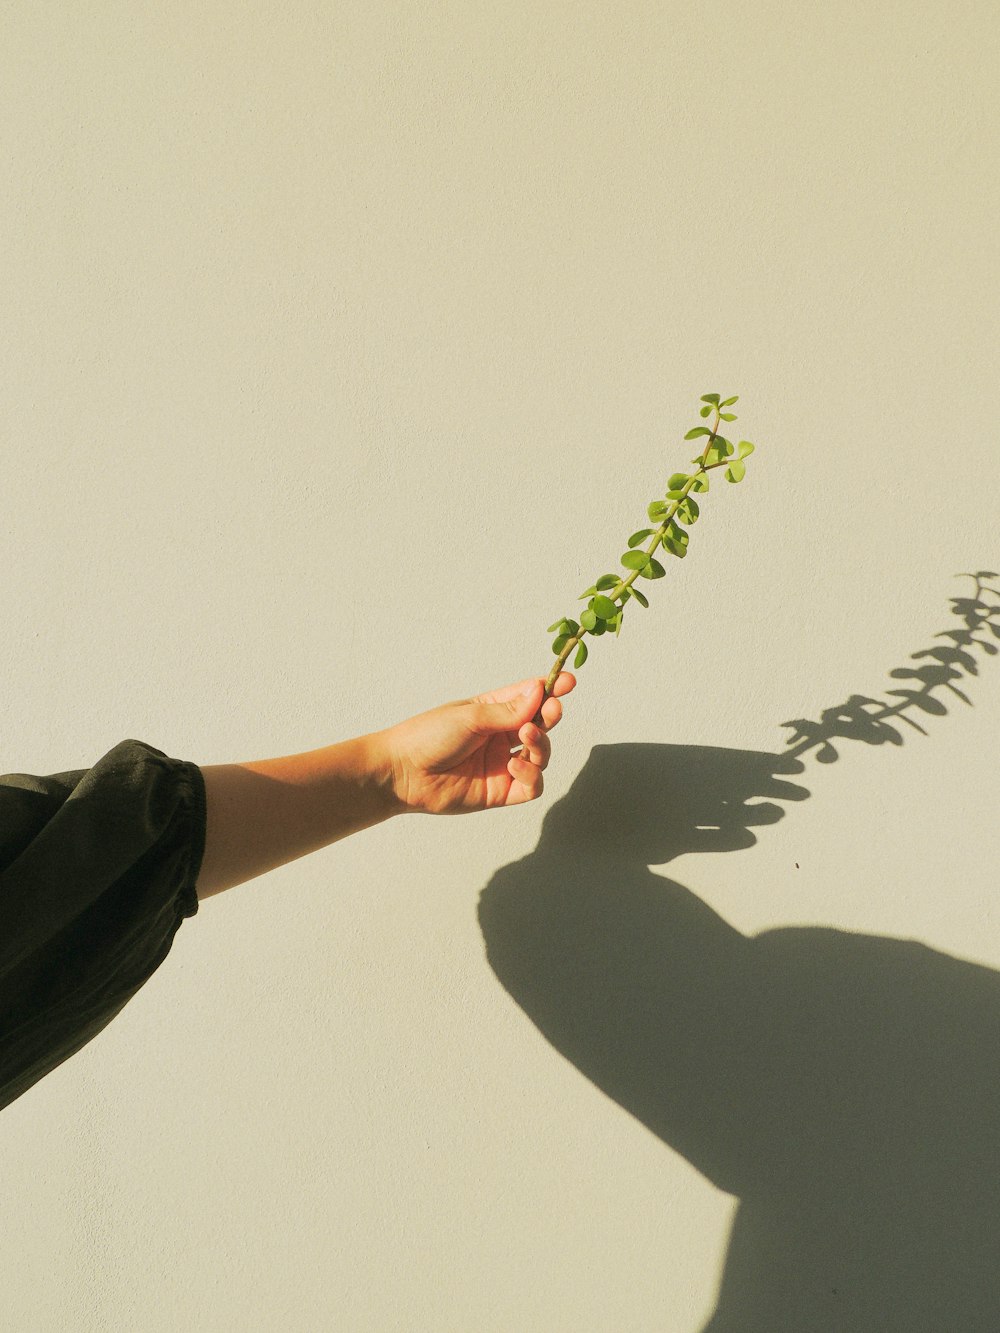 흰색 페인트 벽에 녹색 식물을 들고 있는 사람